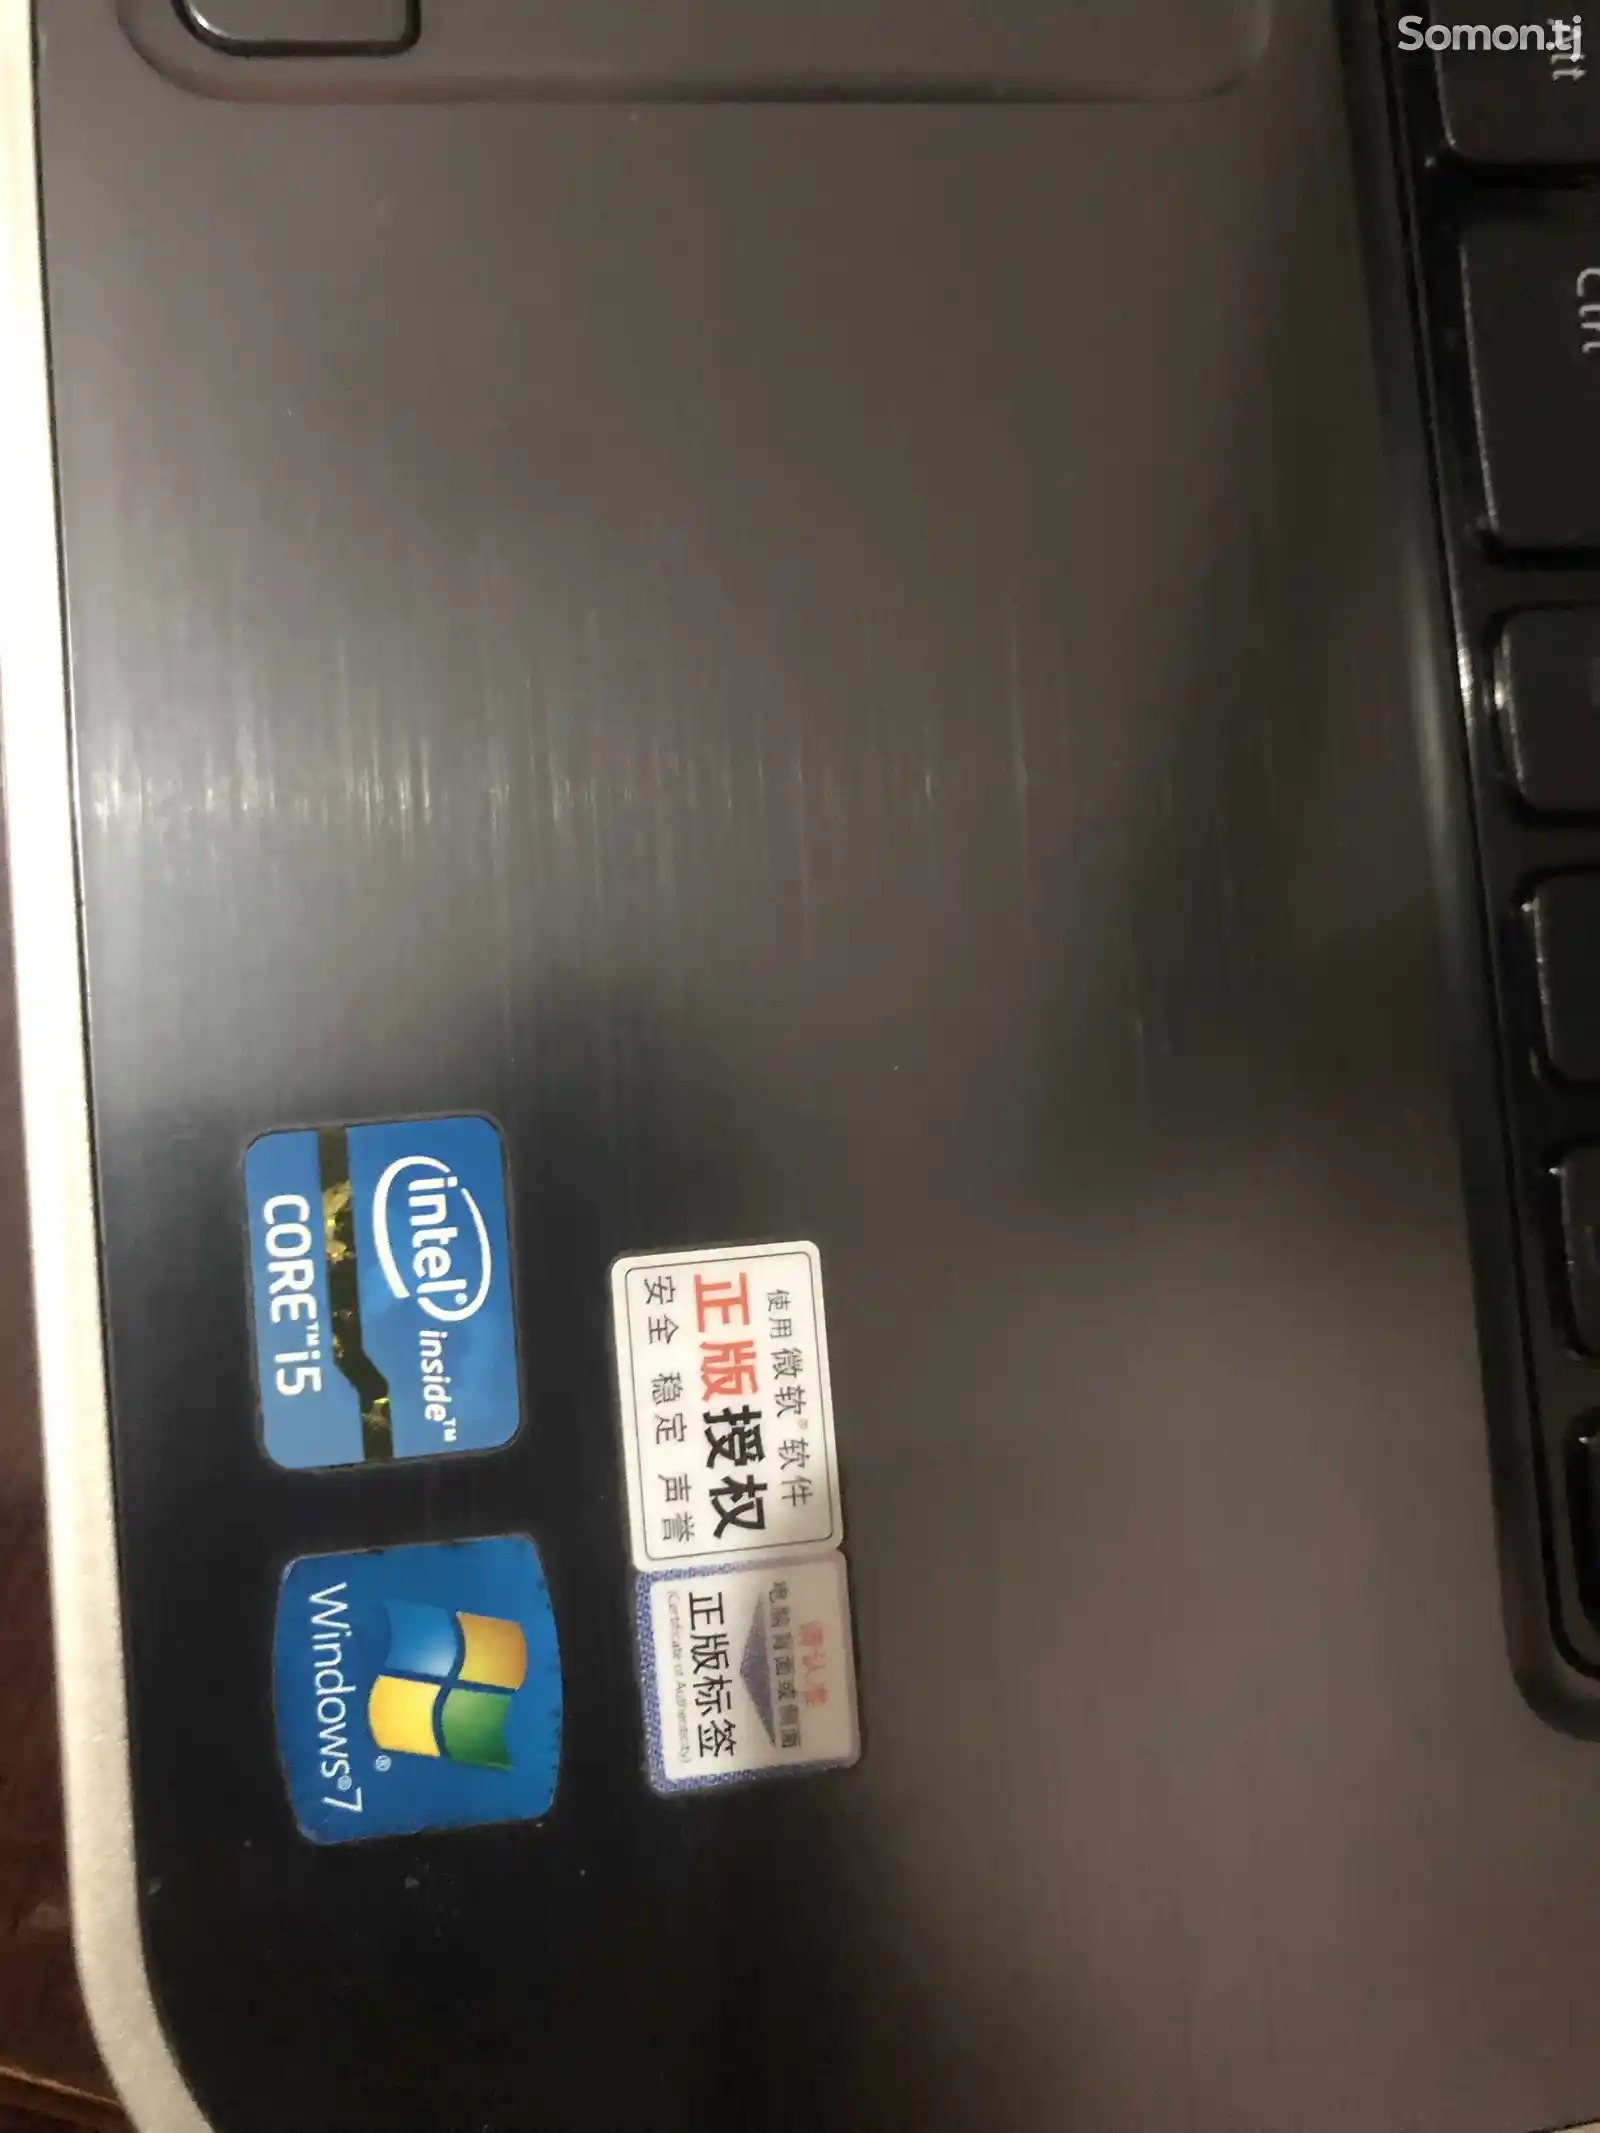 Ноутбук Dell core i5-3